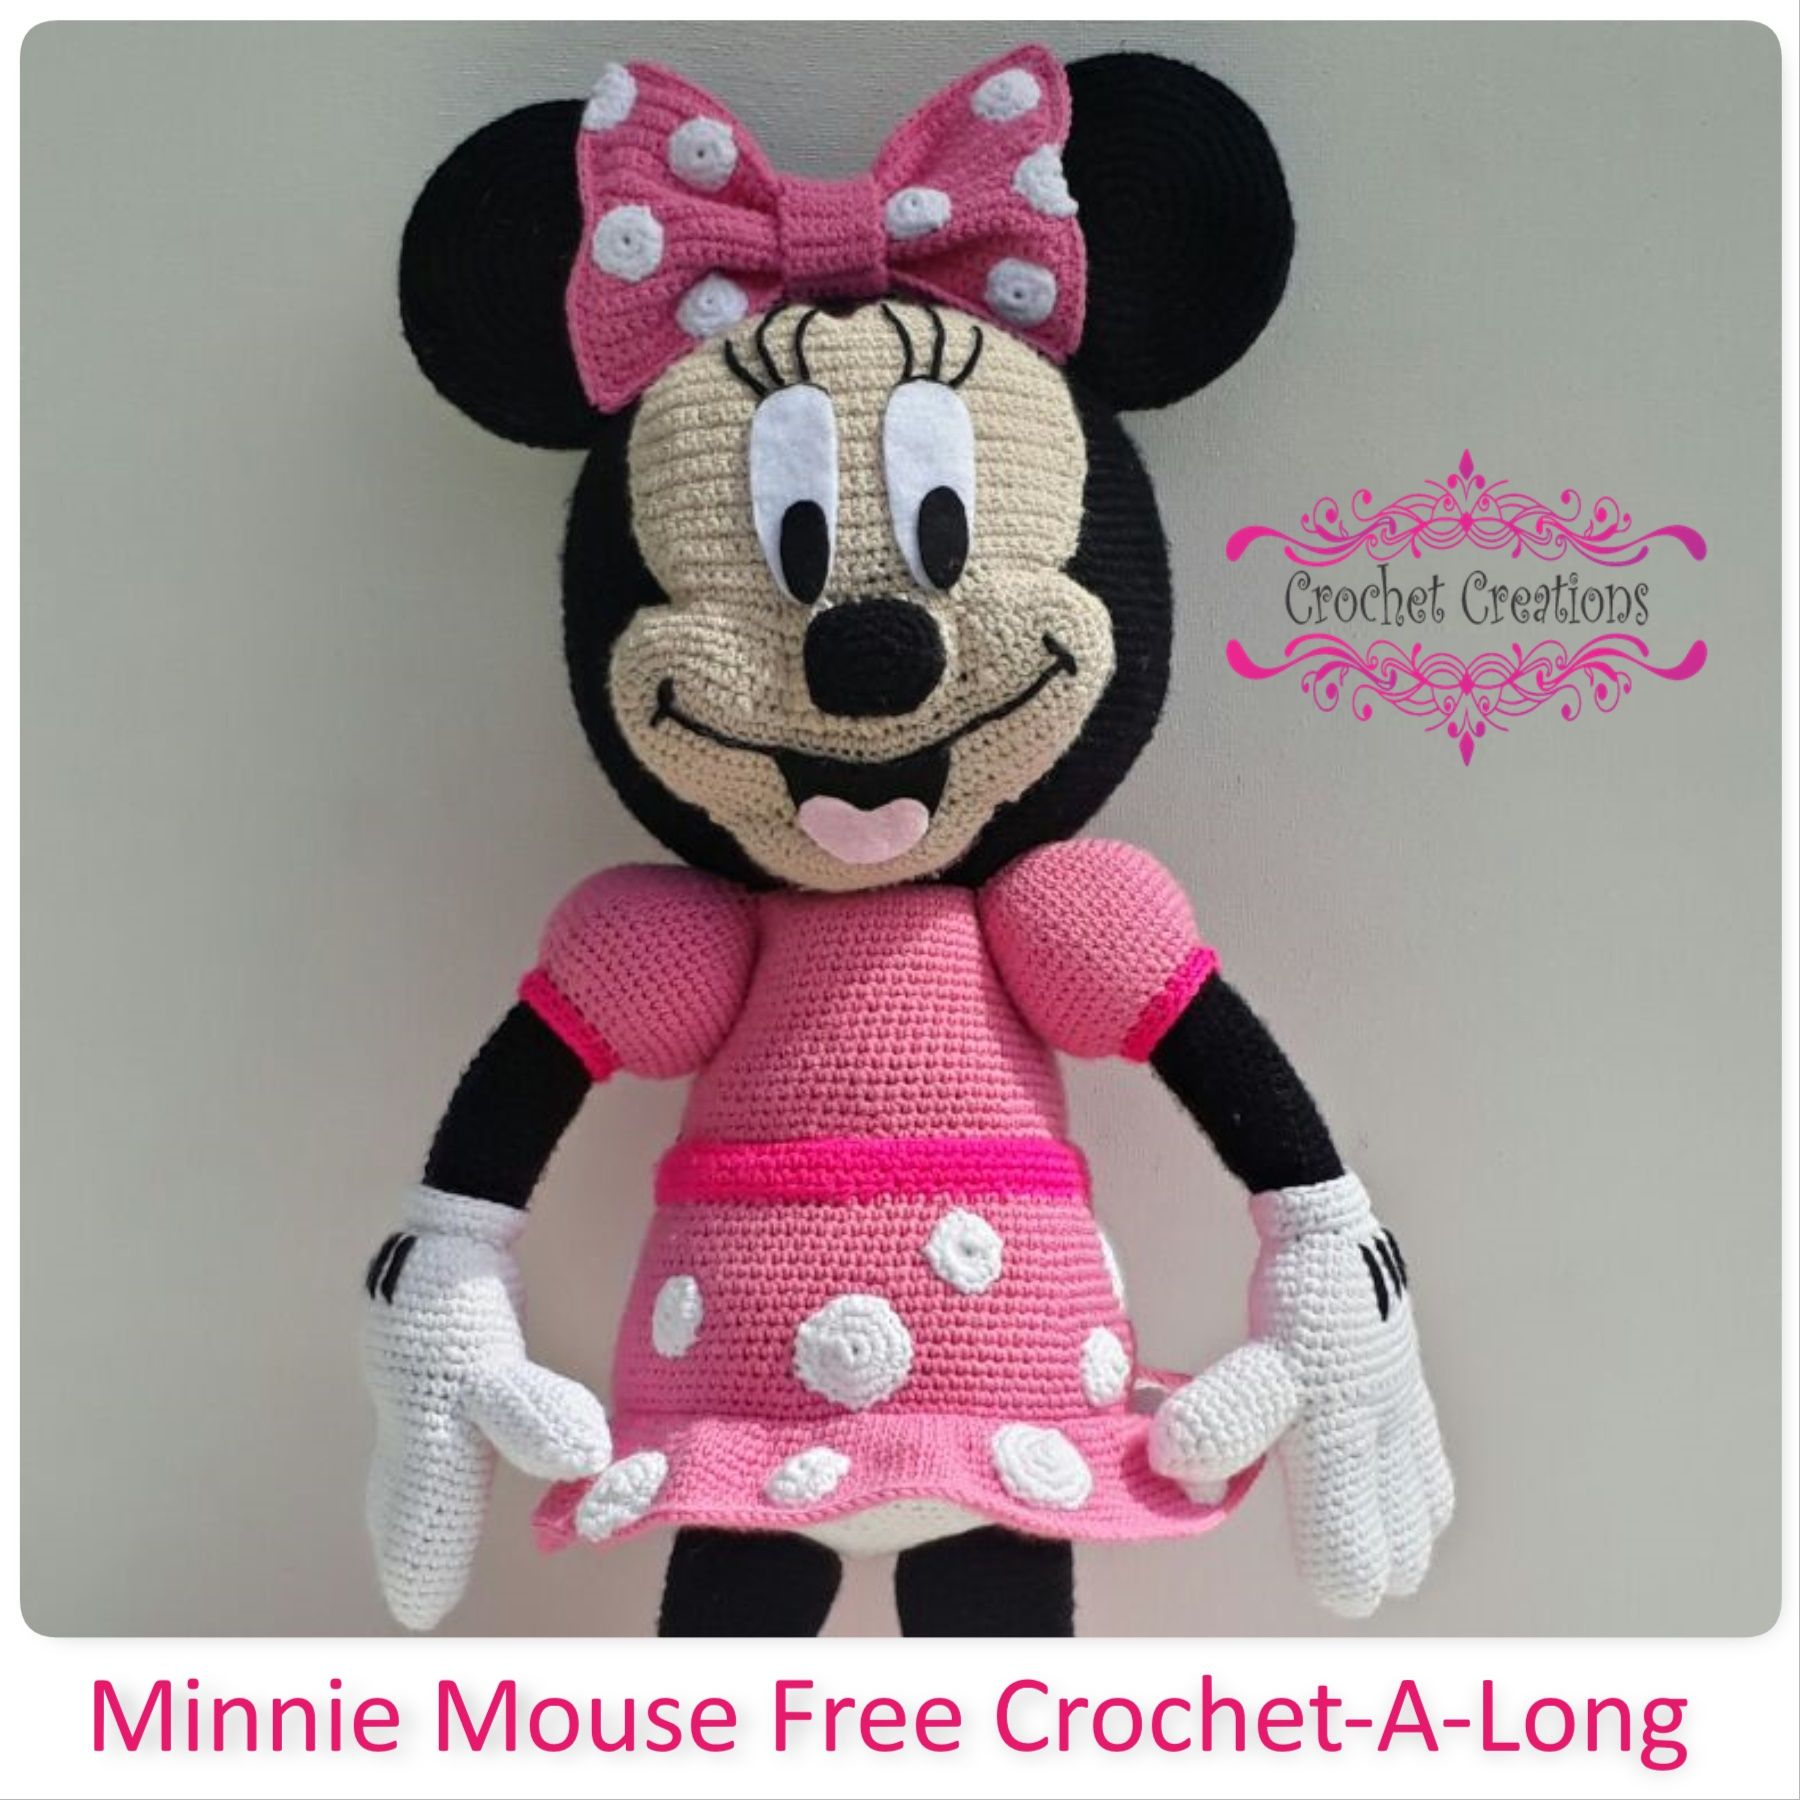 Free Crochet Minnie Mouse Doll Pattern Minnie Mouse Free Crochet Pattern Free Crochet Patterns Crochet